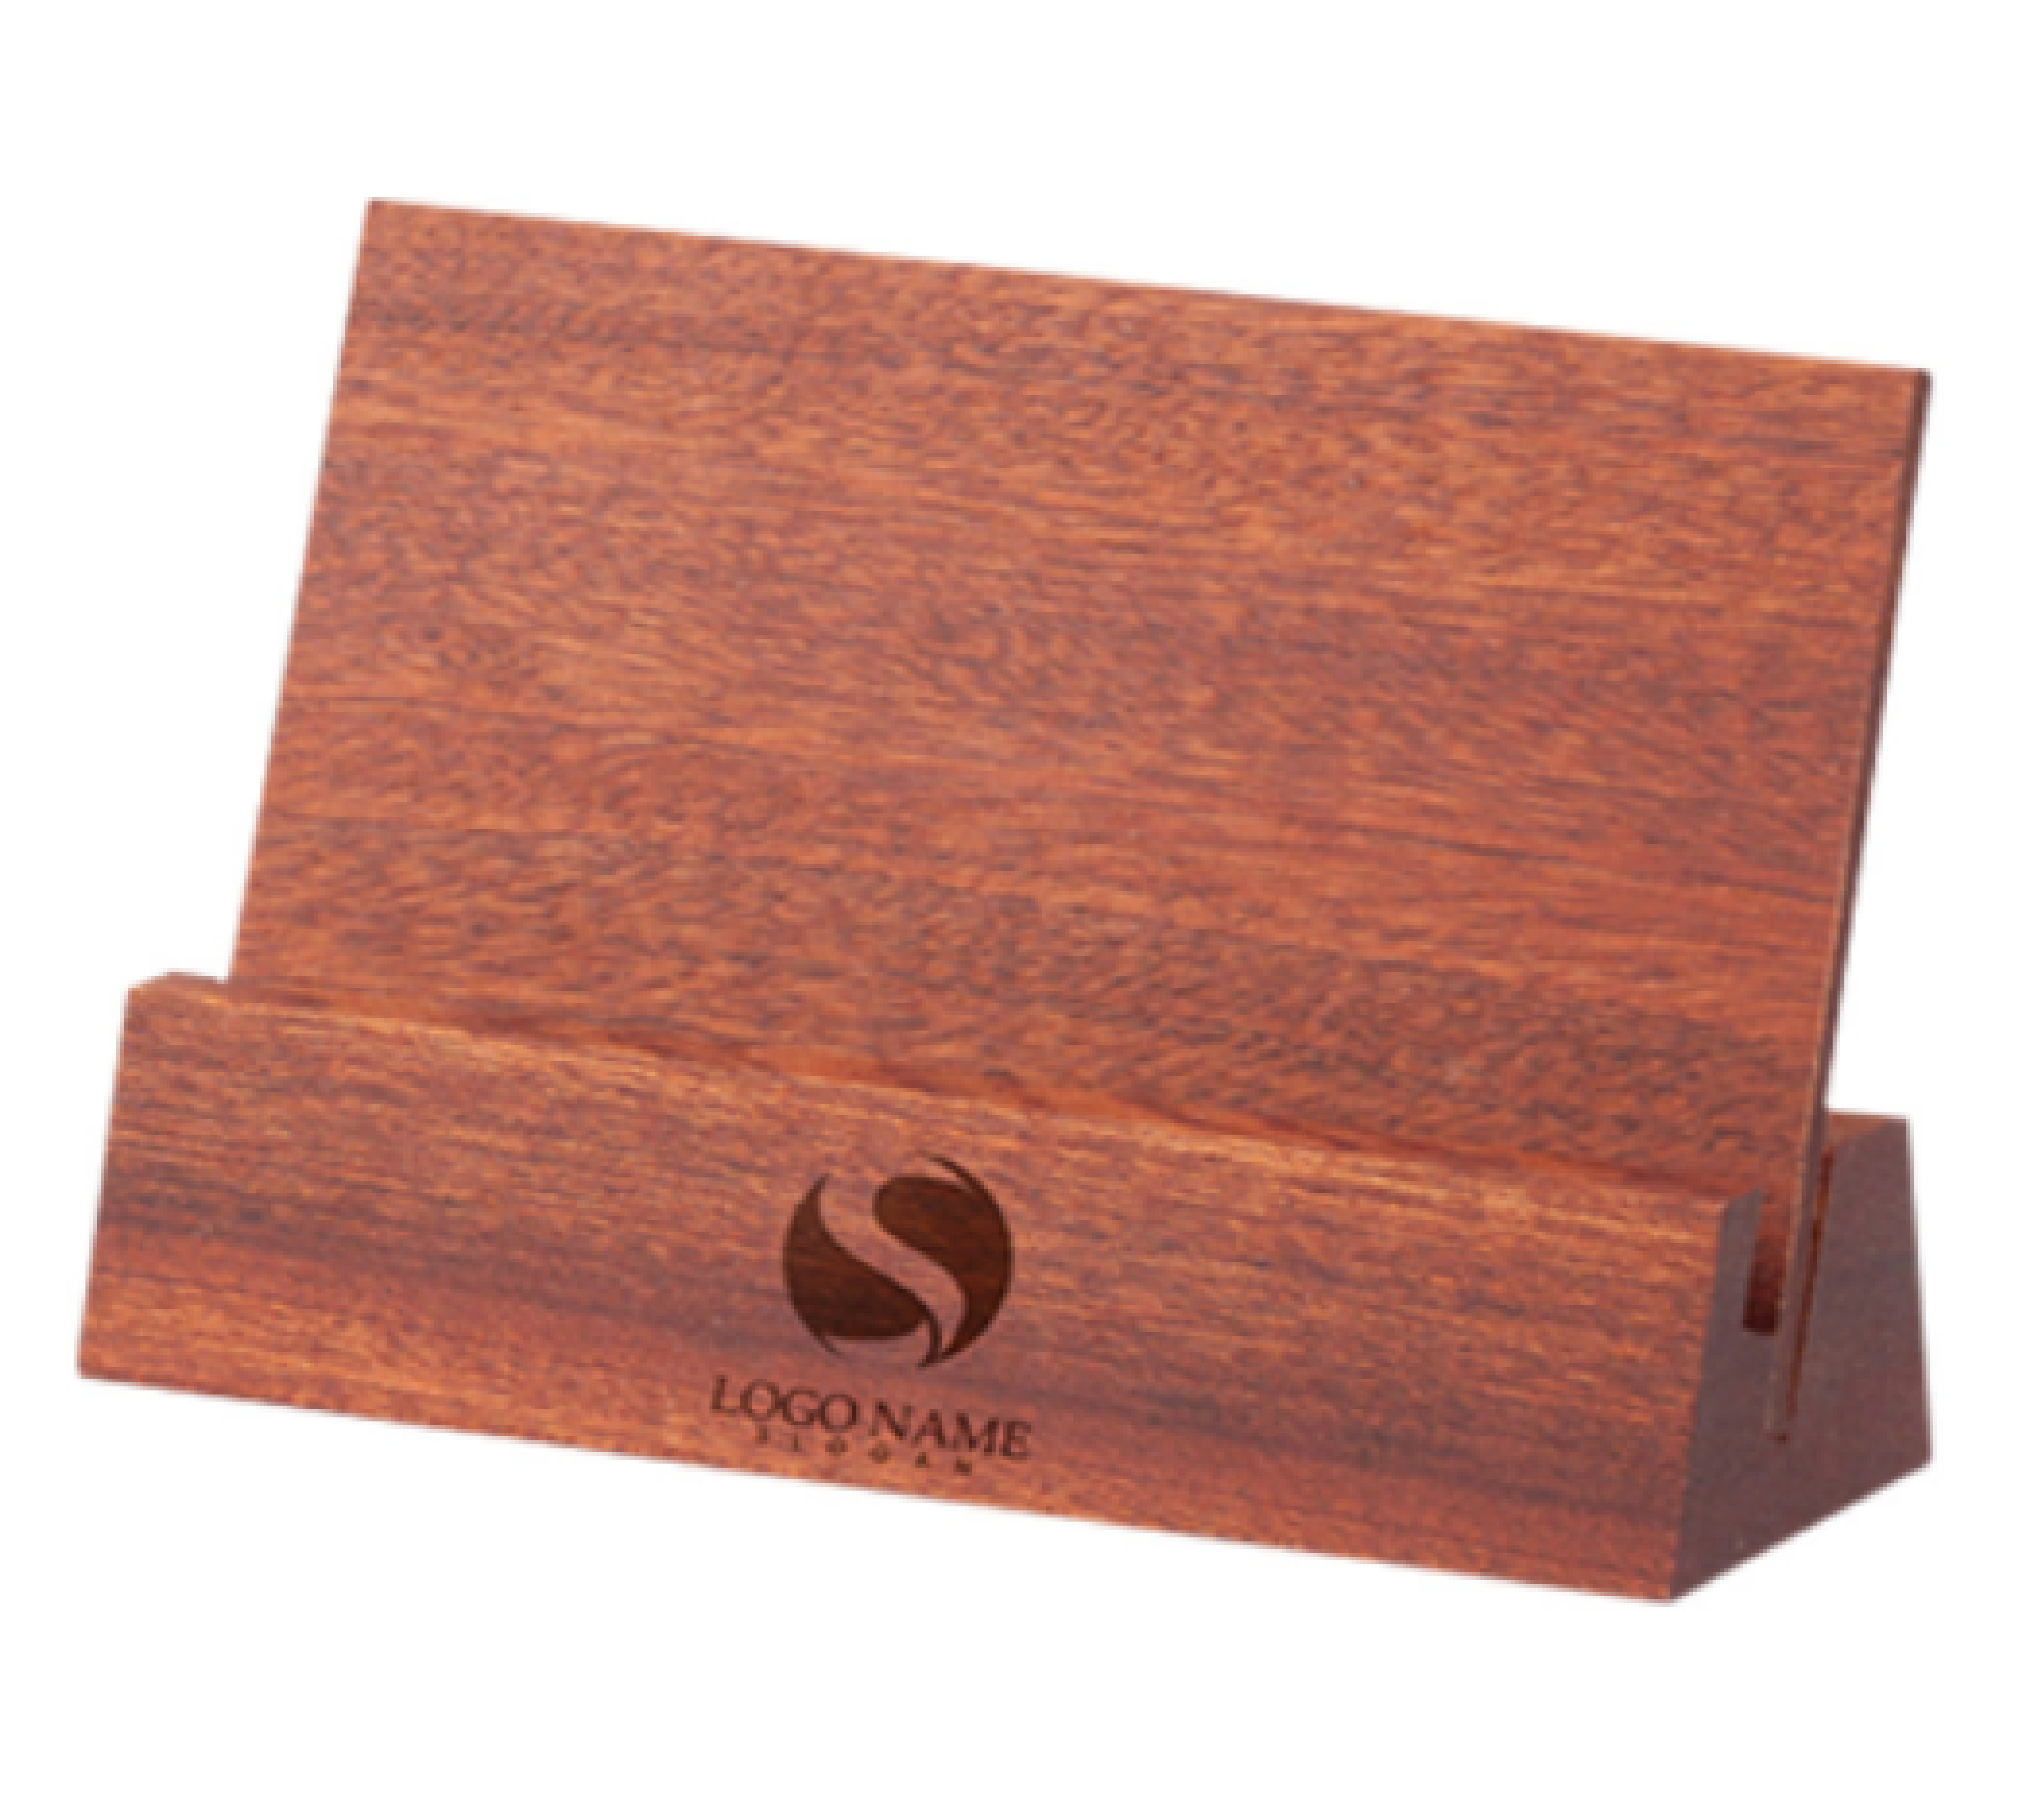 Beech note wooden base desk calendar base wooden card holder